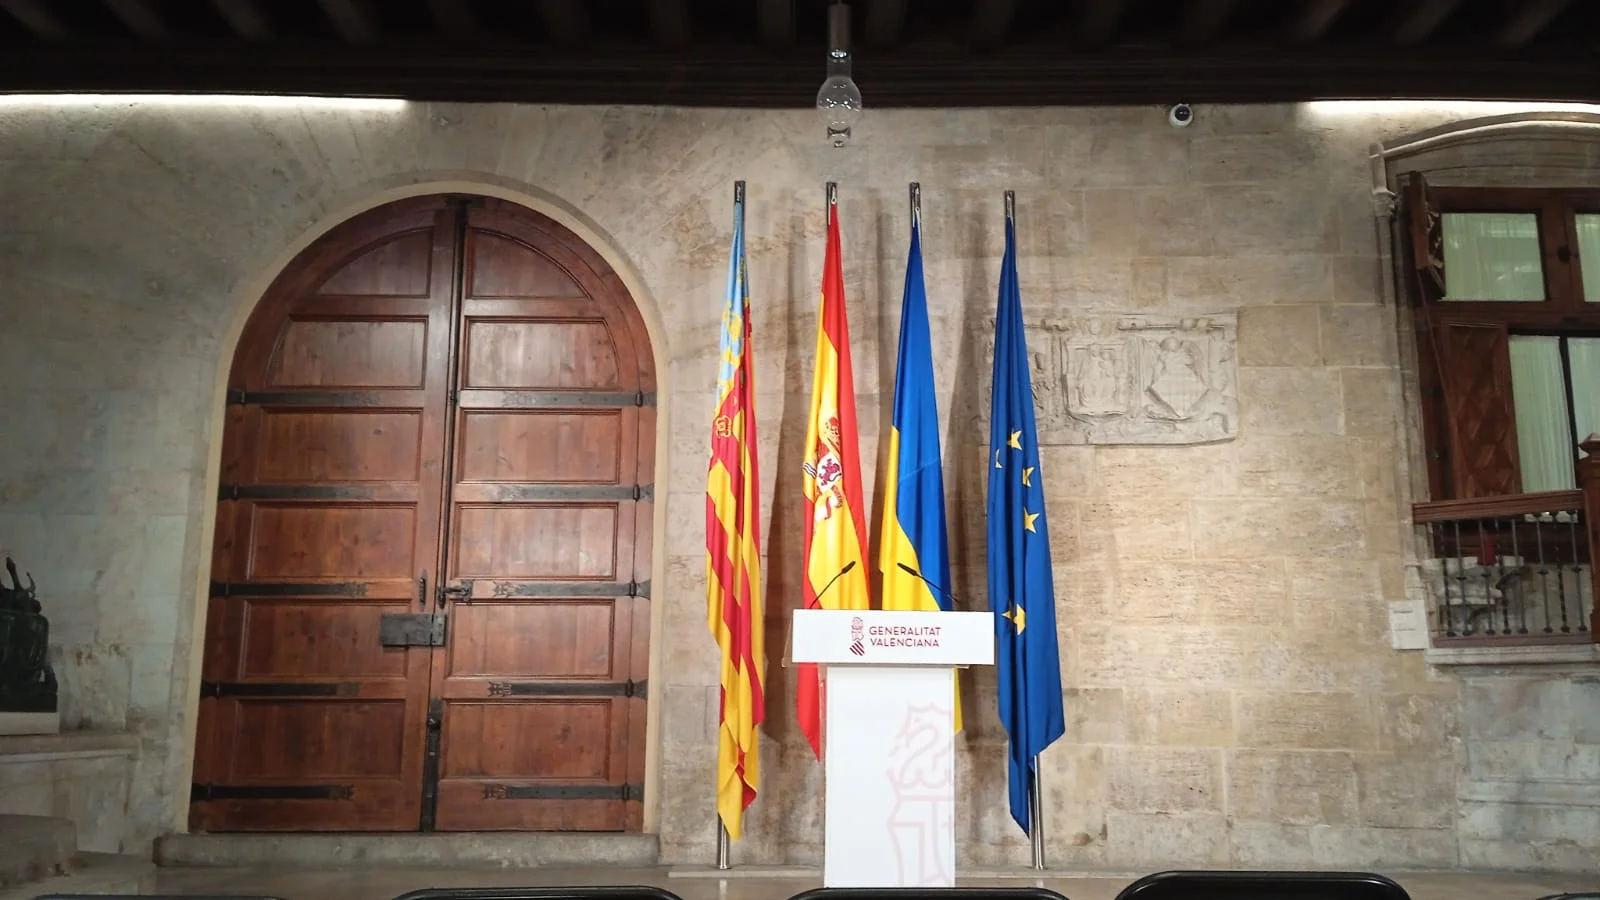 Sigue en Directo la comparecencia del President de la Generalitat Valenciana sobre medidas para afectados incendio